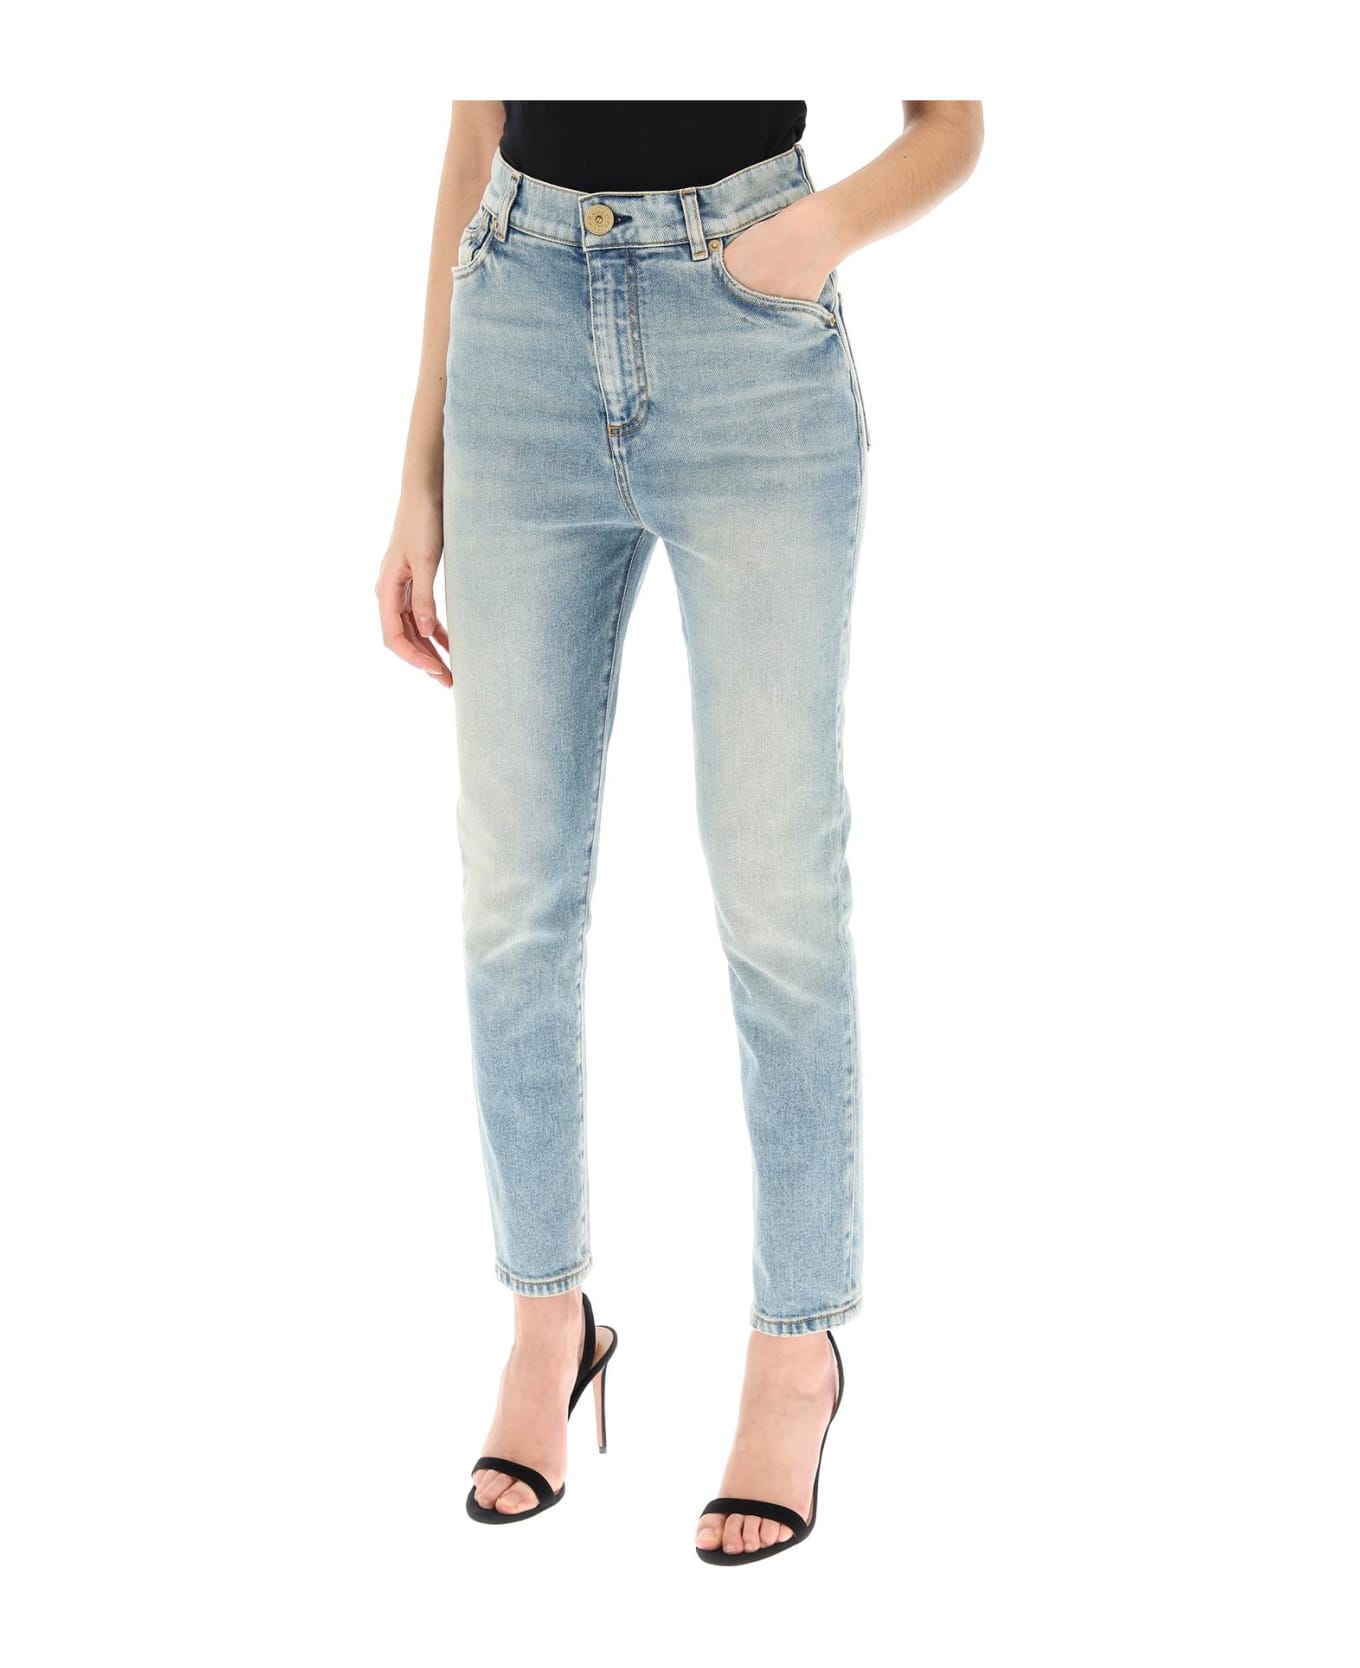 Balmain High-waisted Slim Jeans - BLEU JEAN (Light blue)